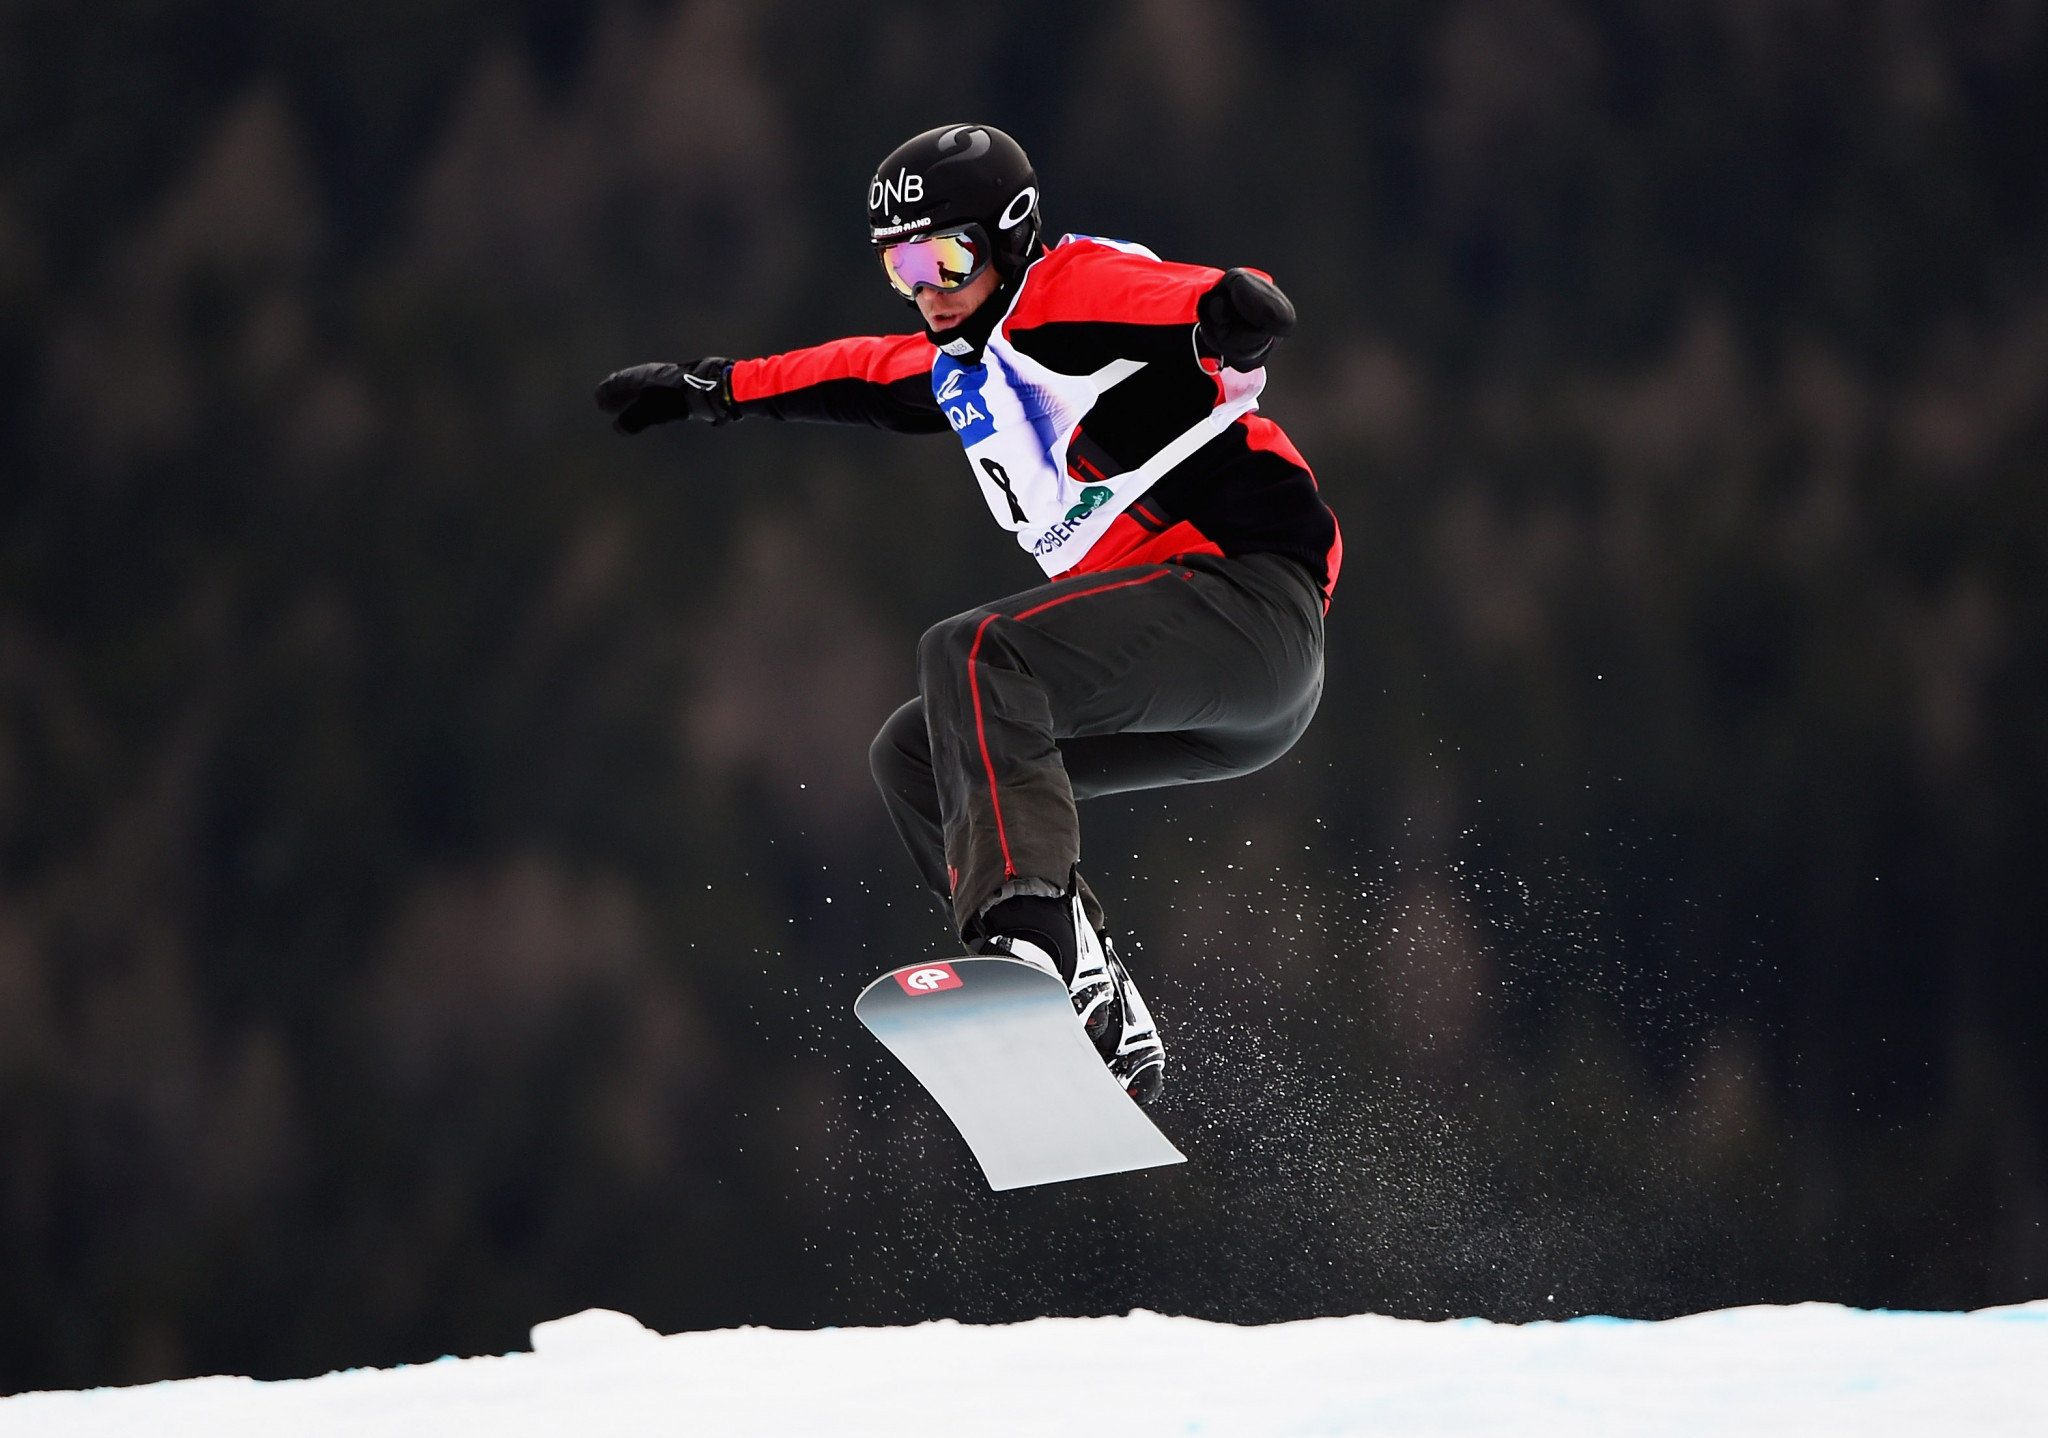 Snowboard cross athlete Sivertzen announces retirement